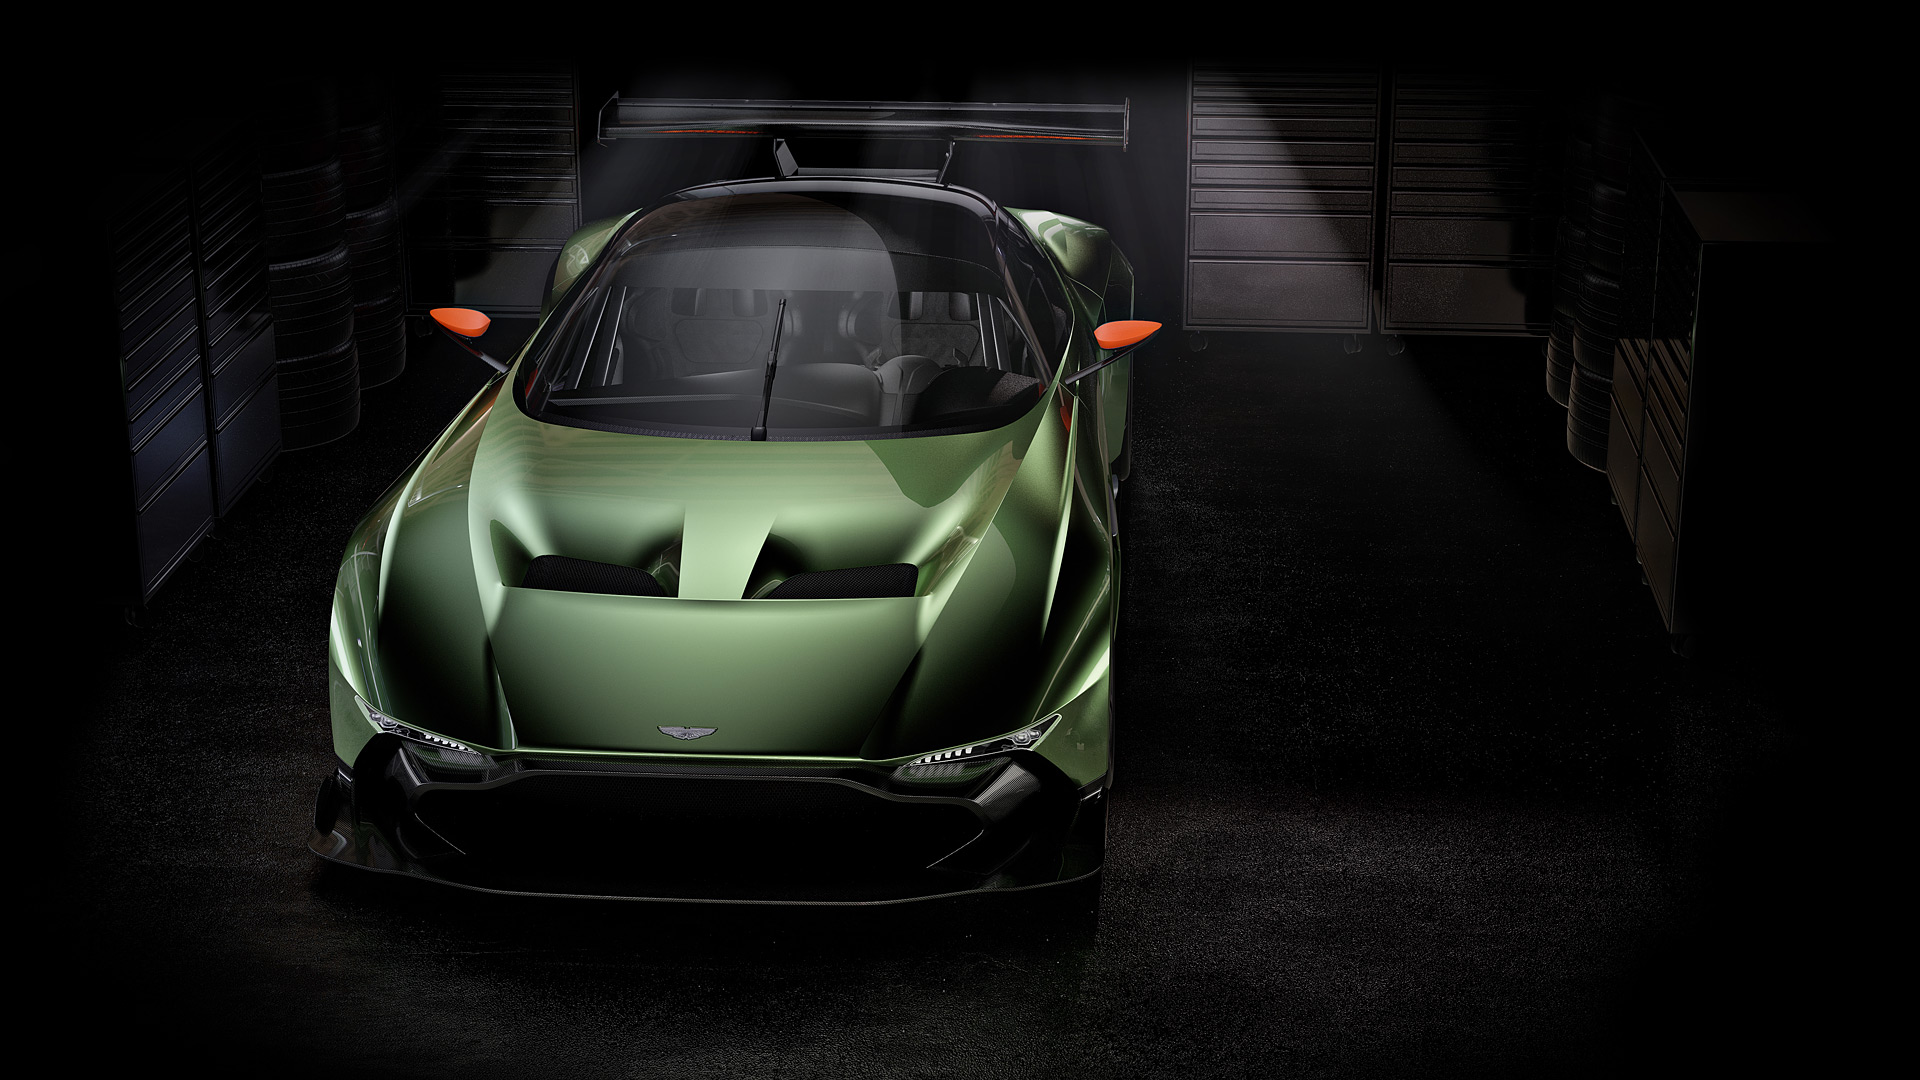  2016 Aston Martin Vulcan= Wallpaper.